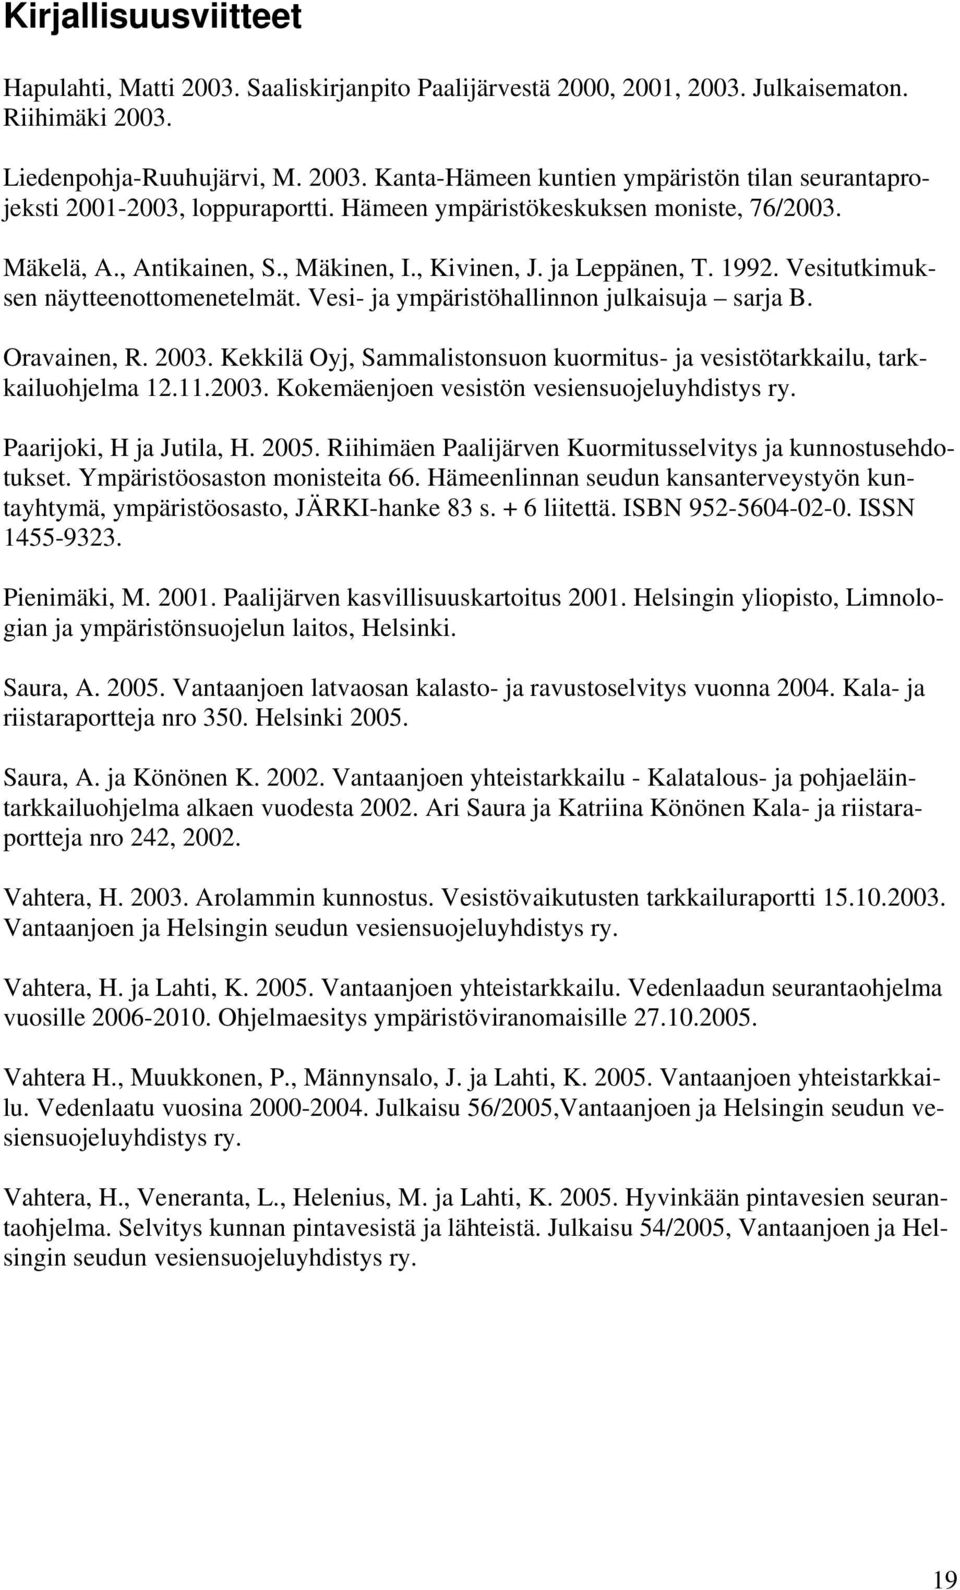 Vesi- ja ympäristöhallinnon julkaisuja sarja B. Oravainen, R. 2003. Kekkilä Oyj, Sammalistonsuon kuormitus- ja vesistötarkkailu, tarkkailuohjelma 12.11.2003. Kokemäenjoen vesistön vesiensuojeluyhdistys ry.